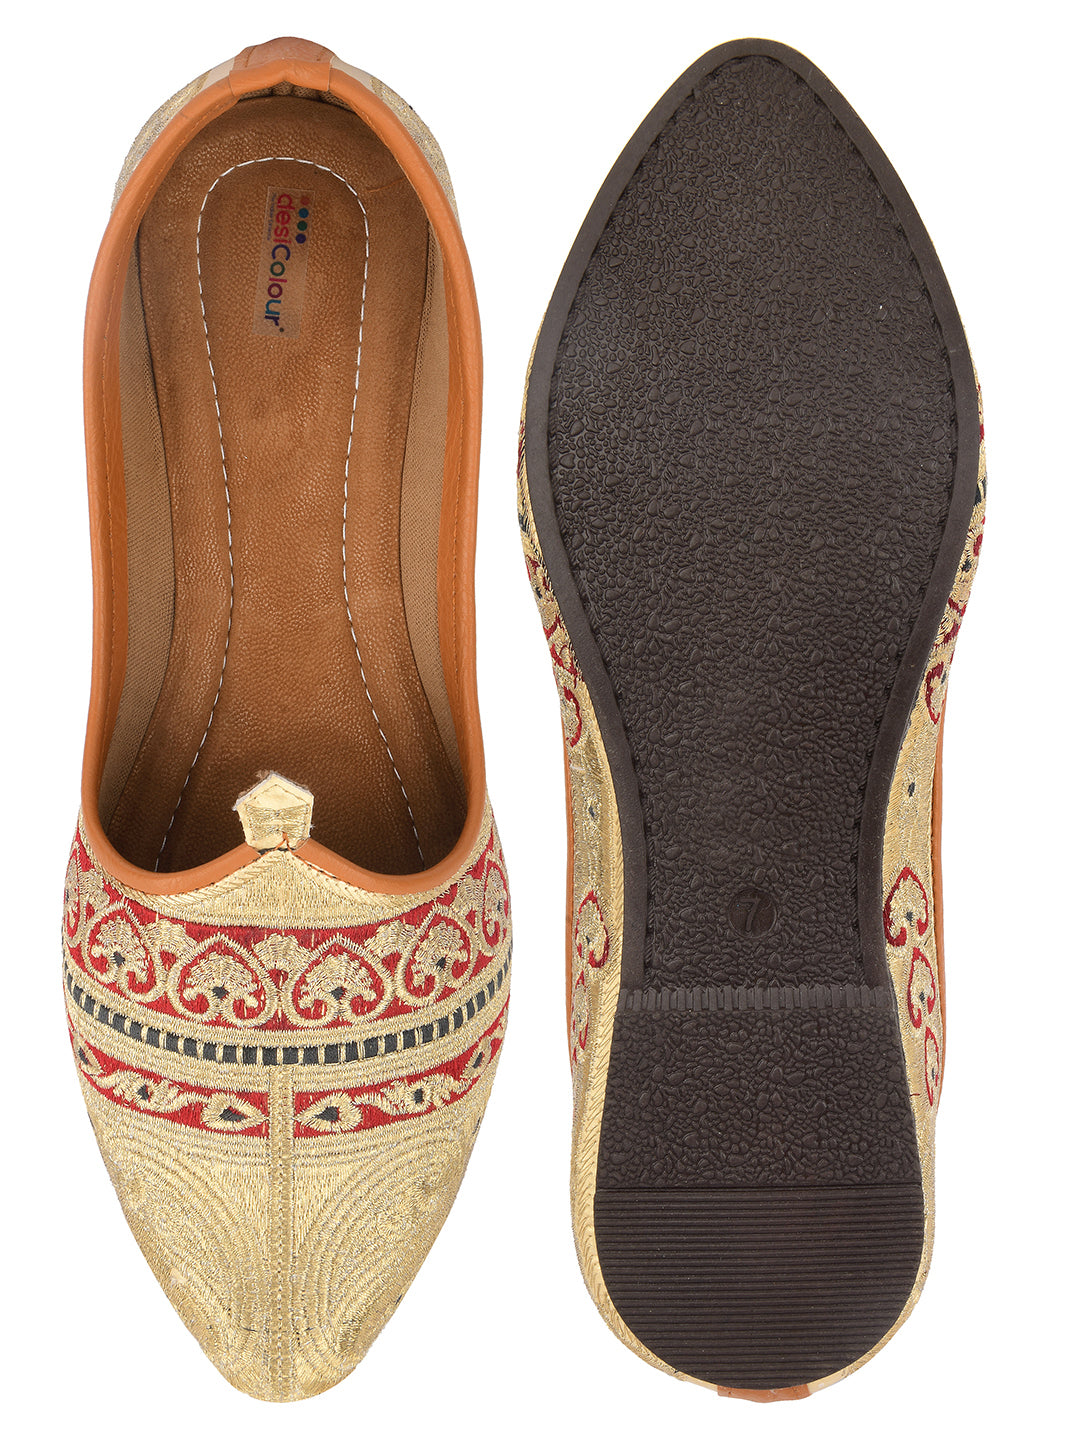 DESI COLOUR Mens Multi Ethnic Footwear/Punjabi Jutti